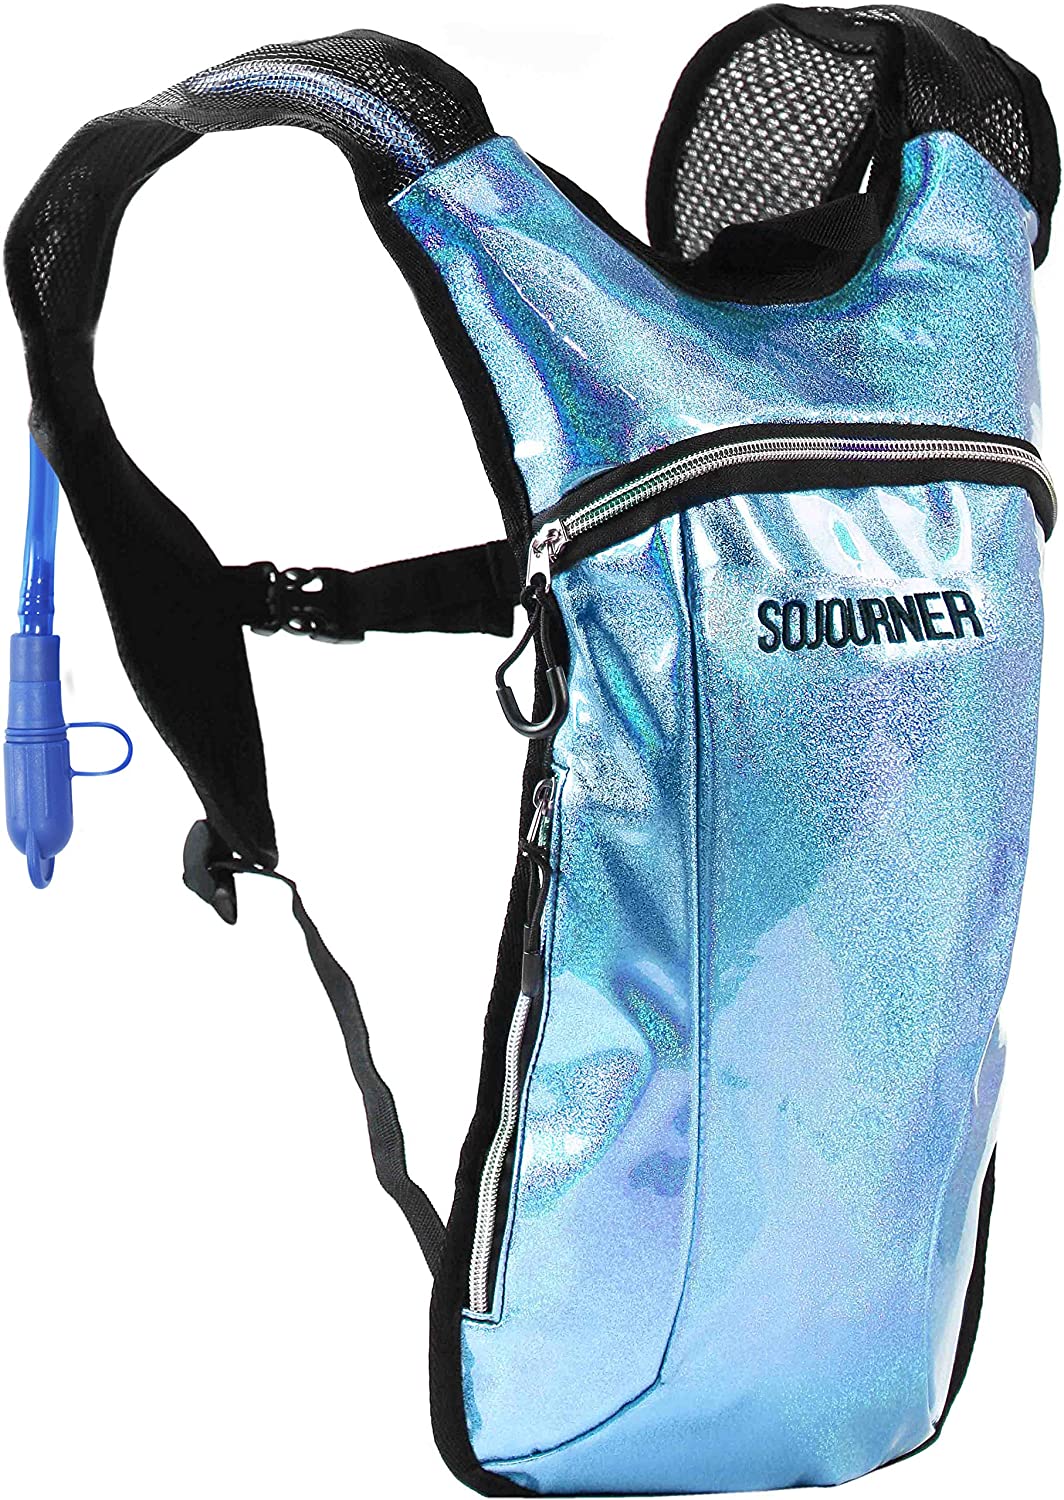 Sojourner Rave Water Bladder 2 Pocket Hydration System